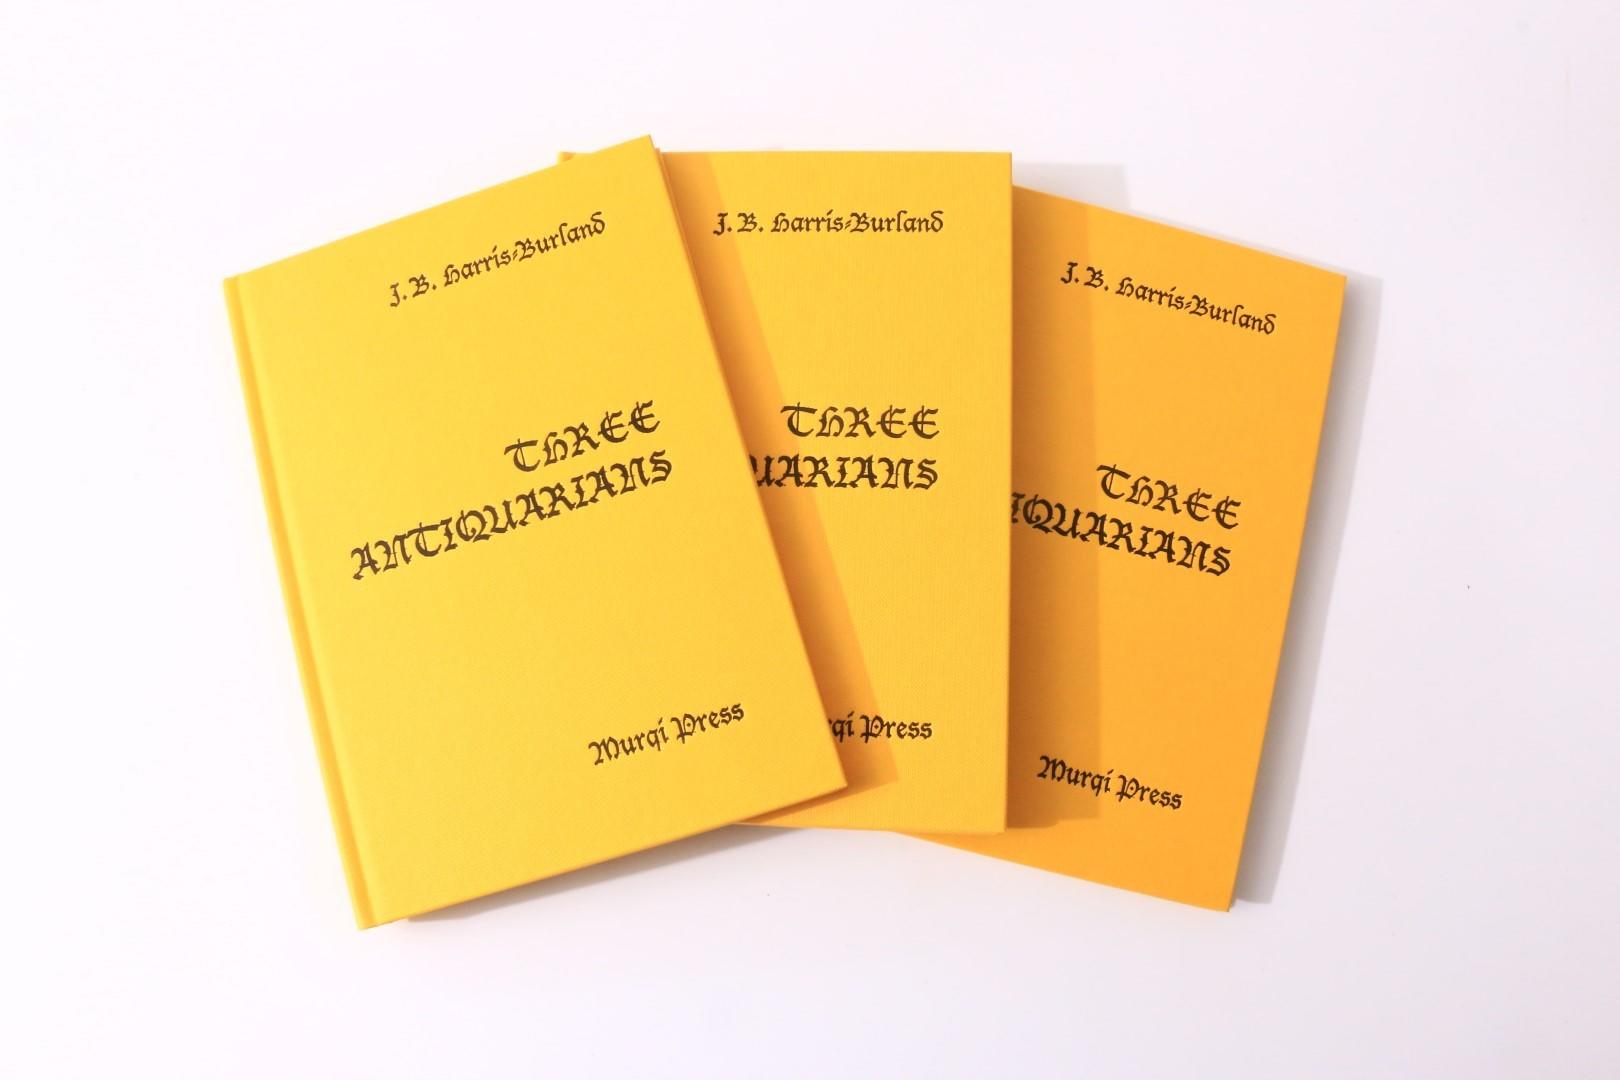 J.B. Harris-Burland - Three Antiquarians - Murqi Press, 1999, Limited Edition.